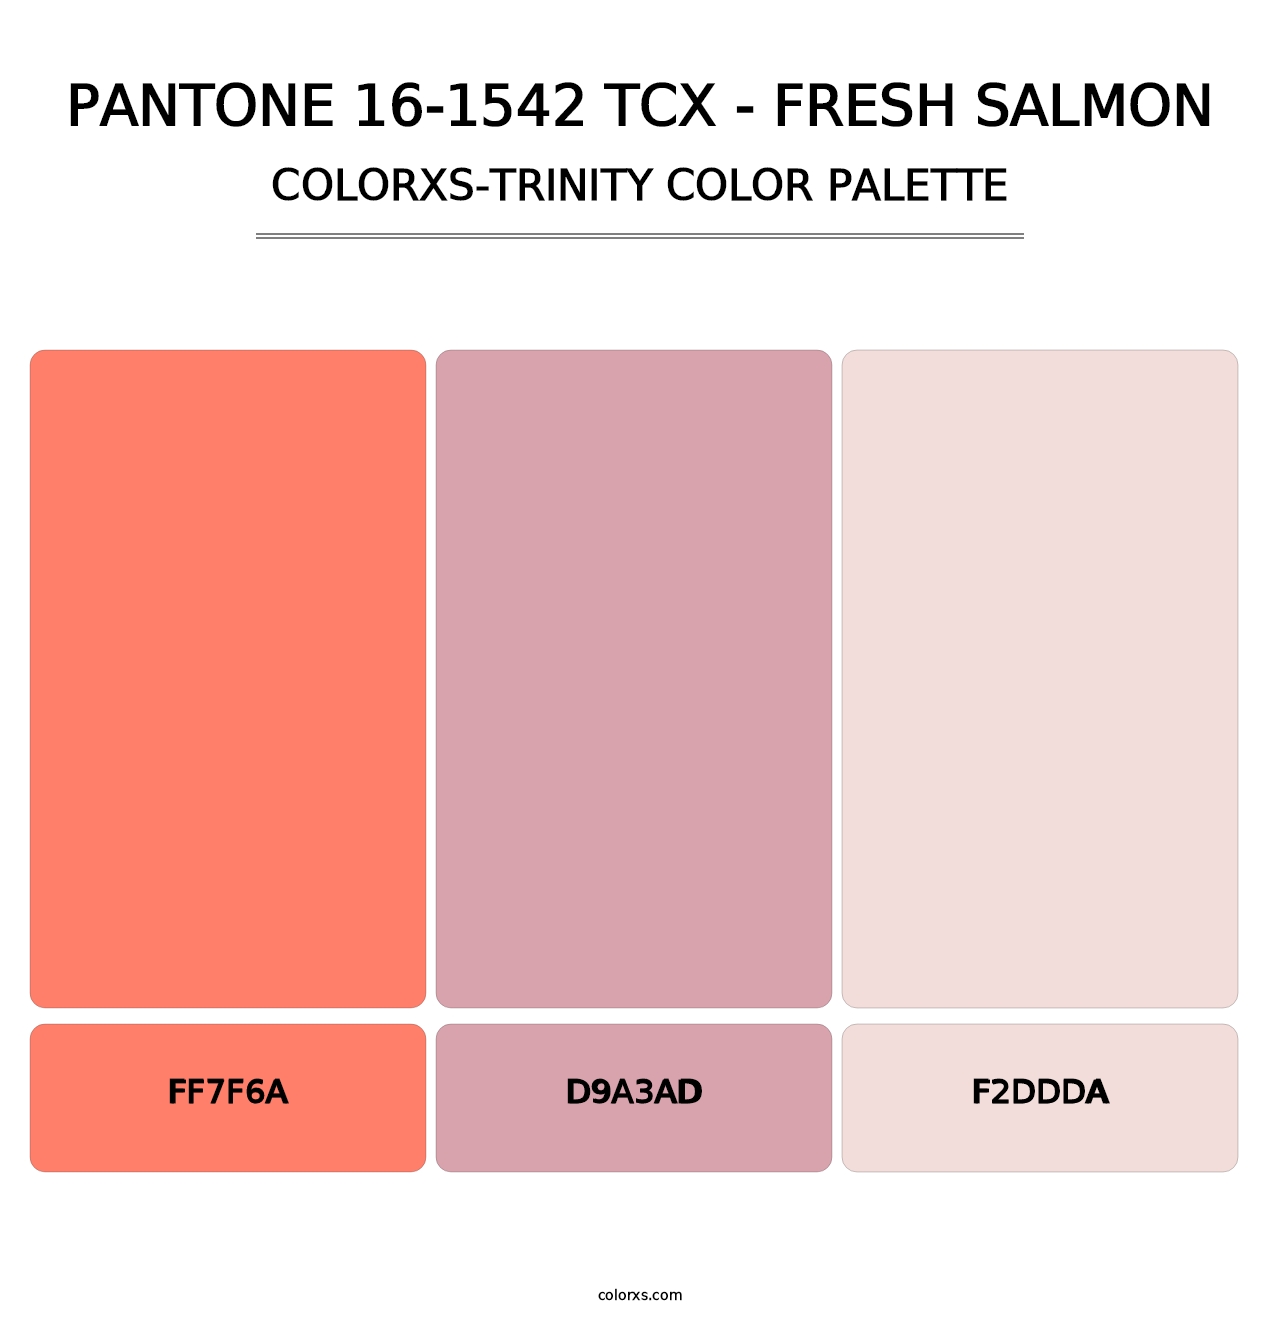 PANTONE 16-1542 TCX - Fresh Salmon - Colorxs Trinity Palette